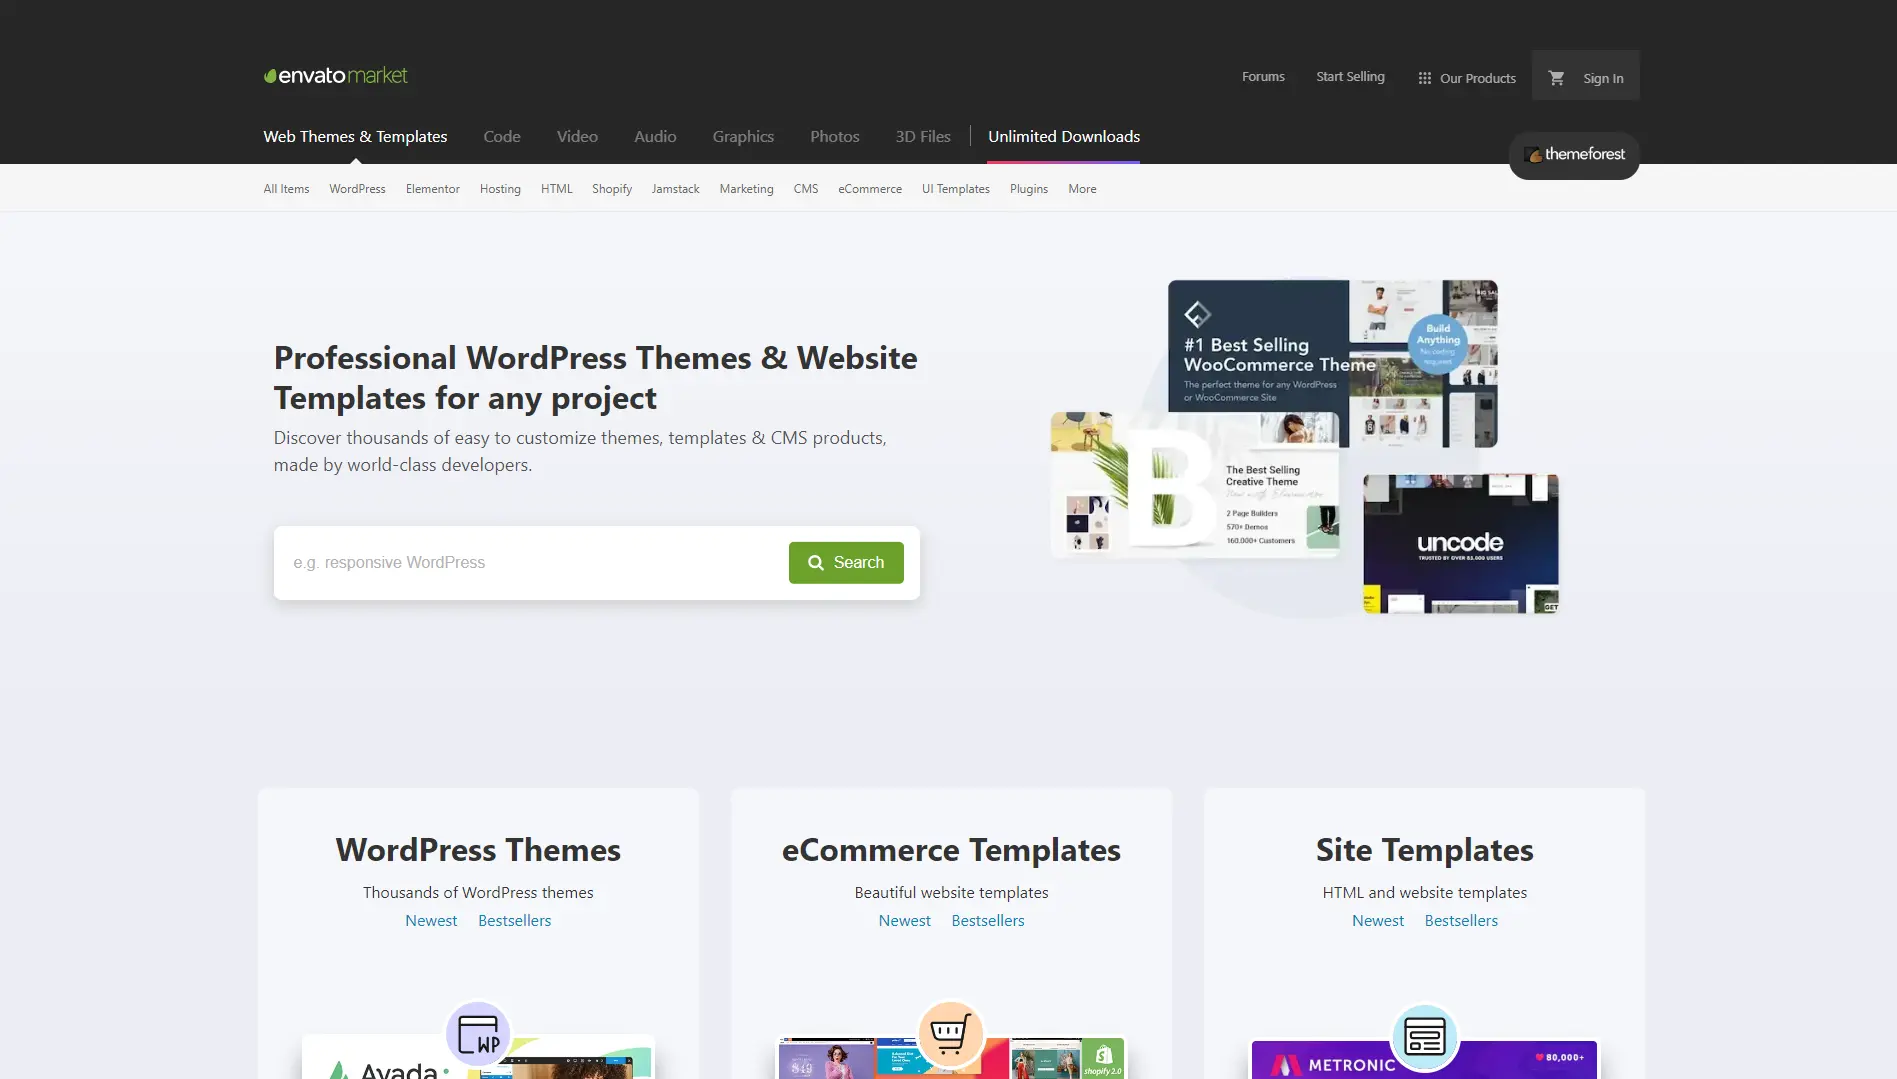 ThemeForest website homepage.